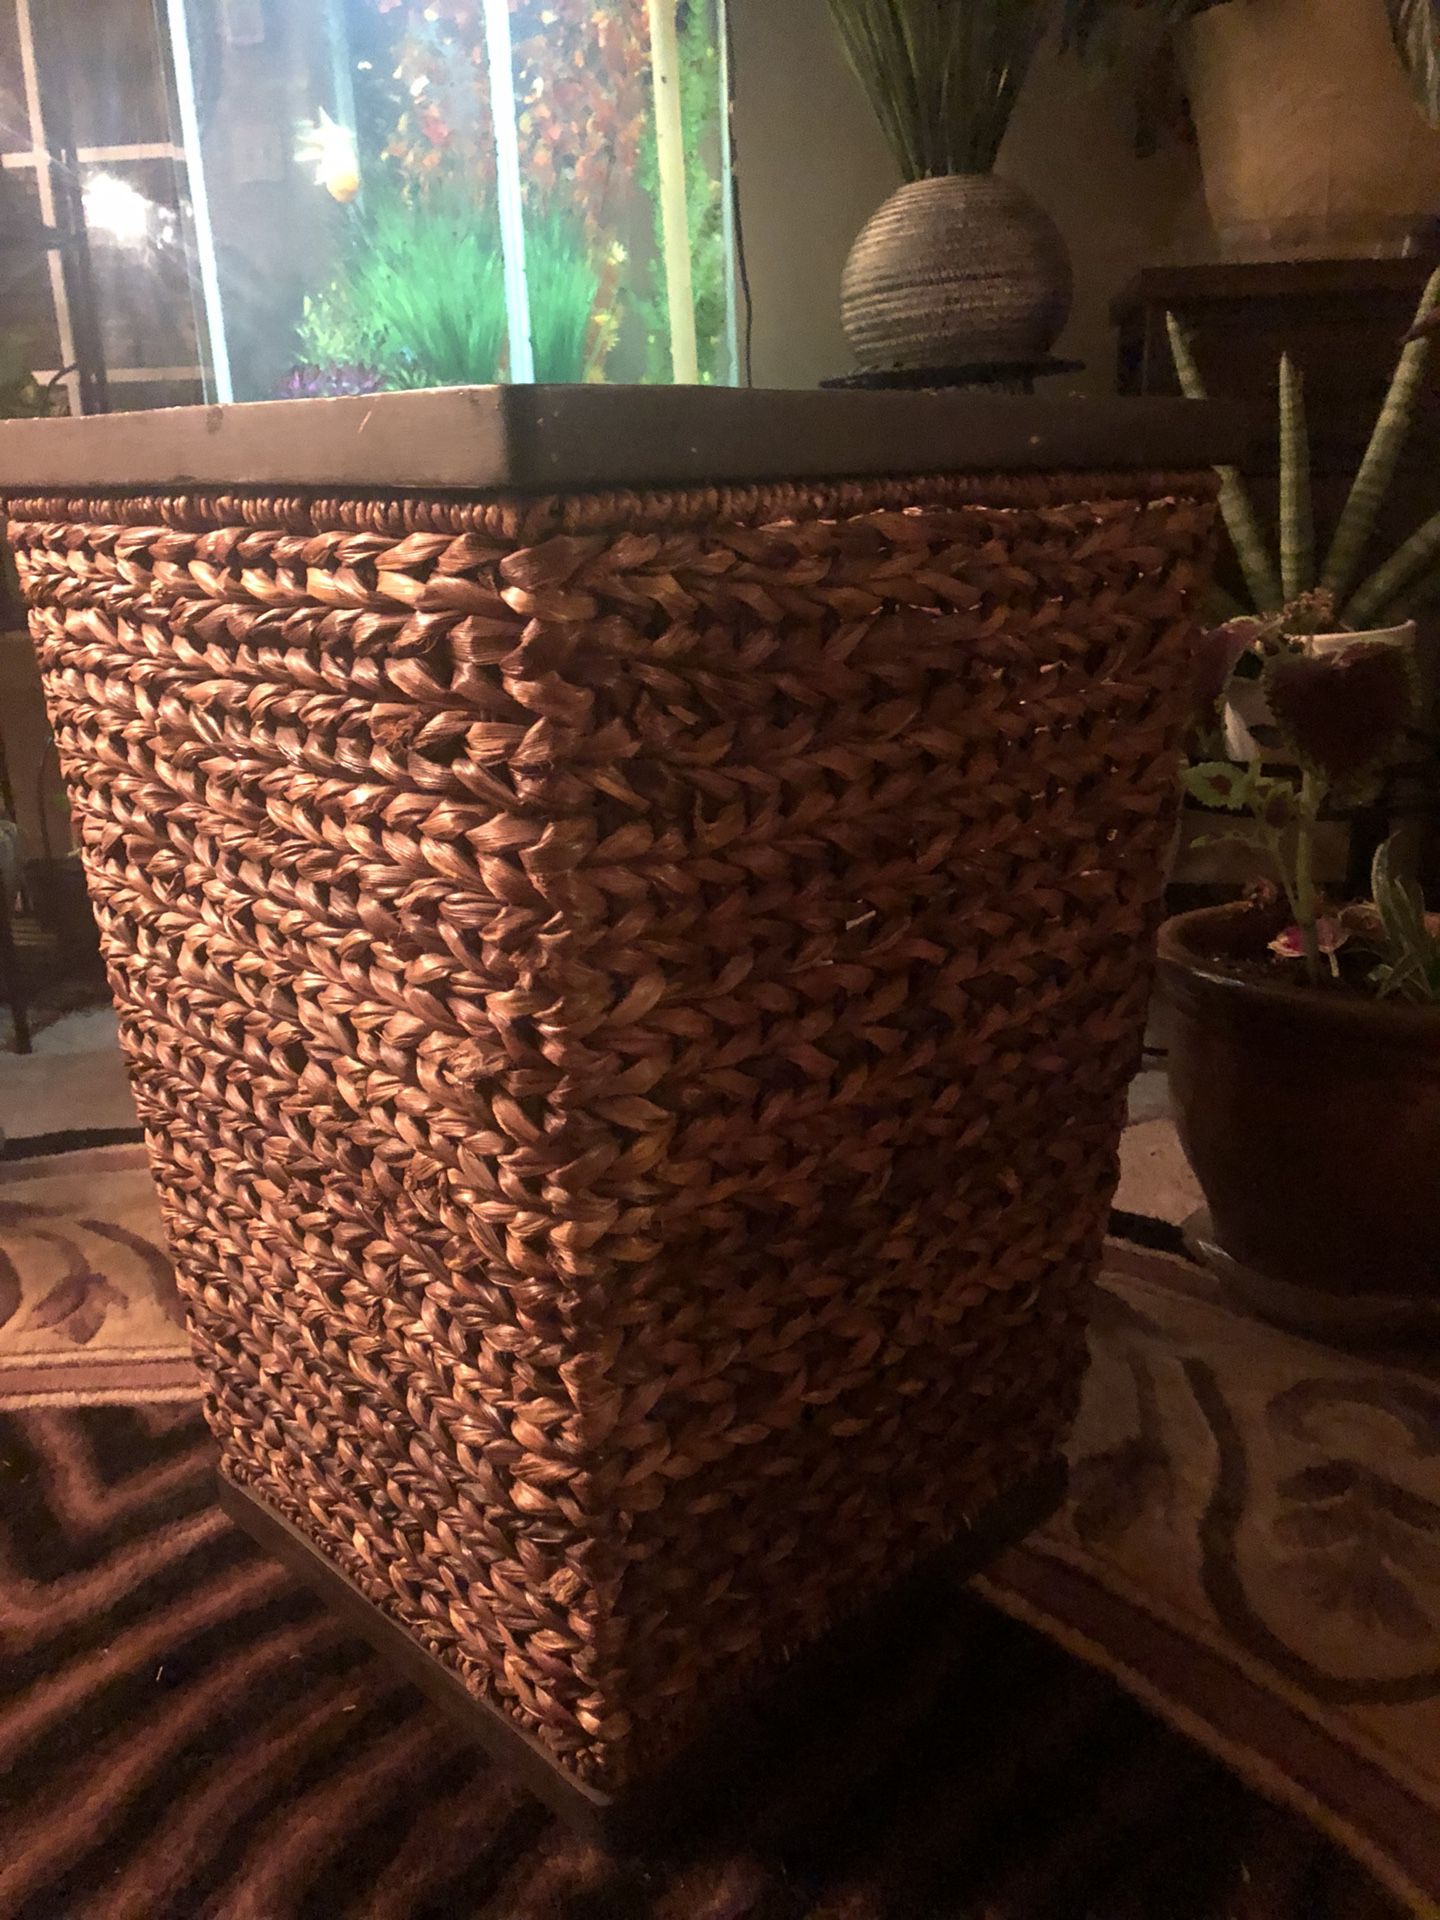 Large Hamper Basket